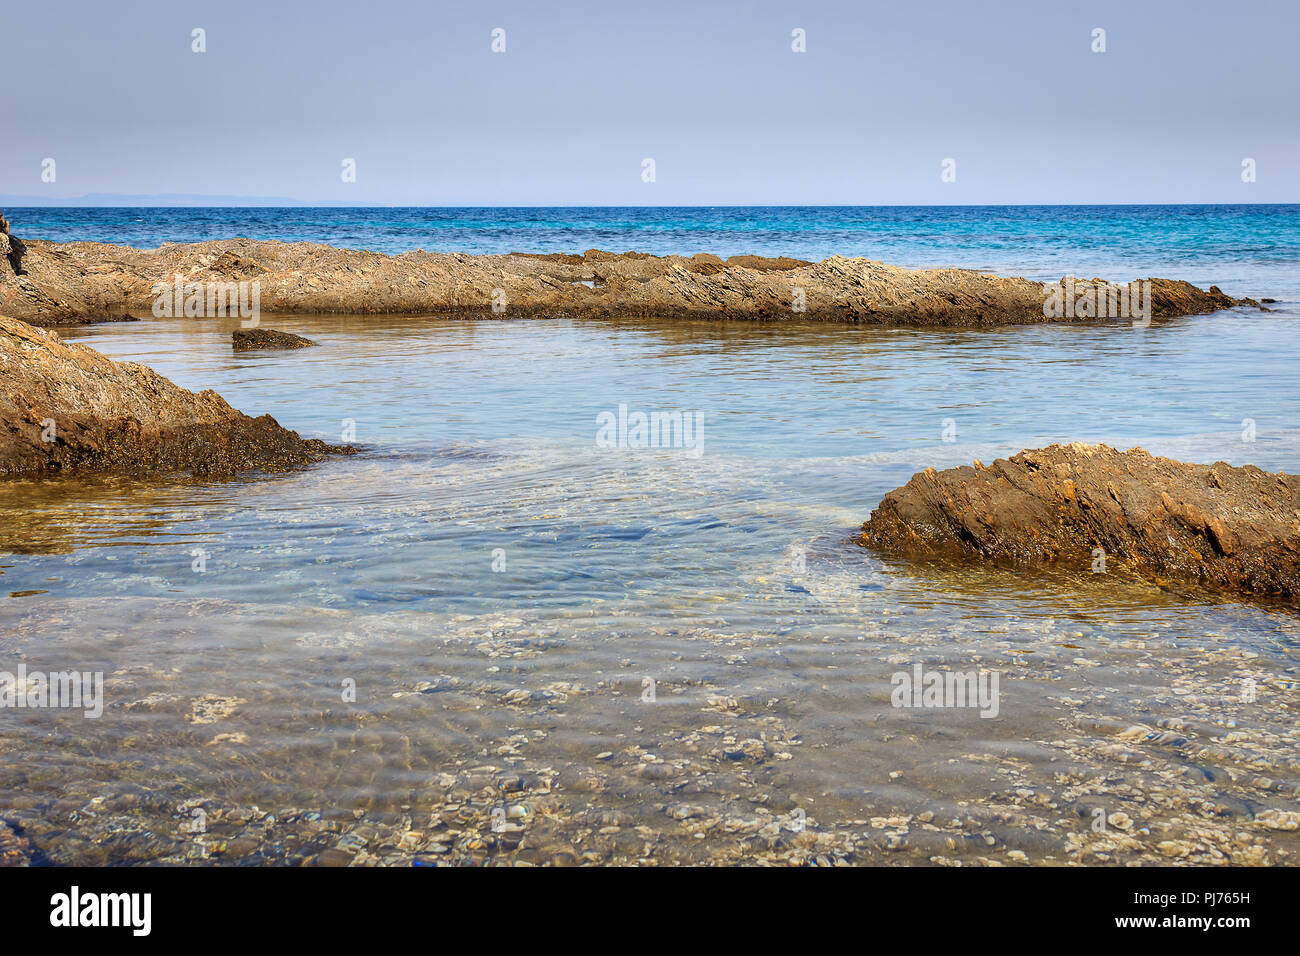 Calma traslucido mare turchese, bellissima scogliera rocciosa sottomarina e creature del mare Foto Stock